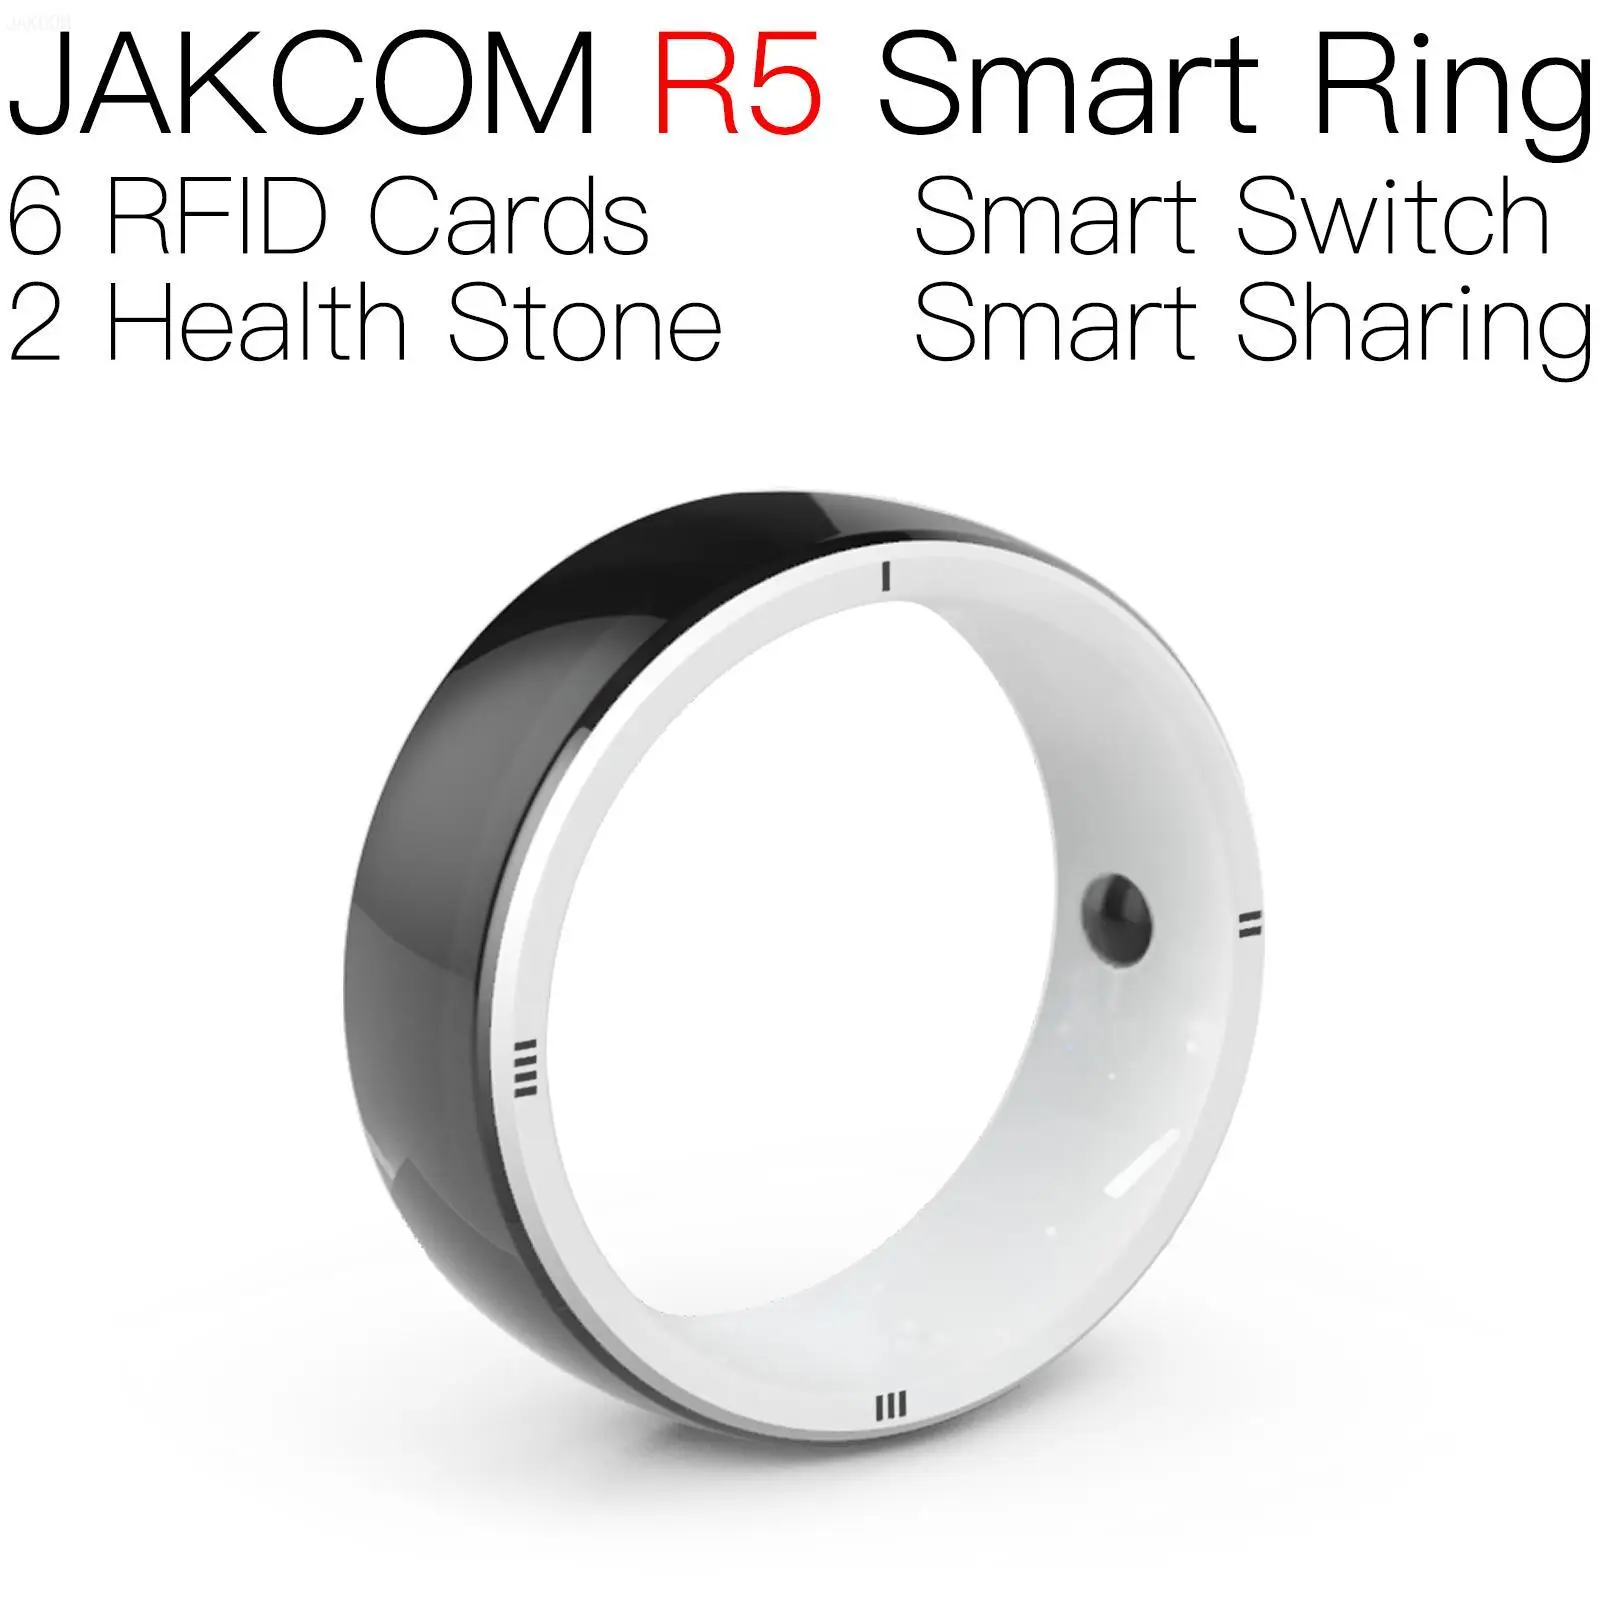 

Умное кольцо JAKCOM R5, супер значение, как стандартное умное кольцо jakcom, бесплатная доставка, fdx b чип-ридер, блок 0, перезаписываемый